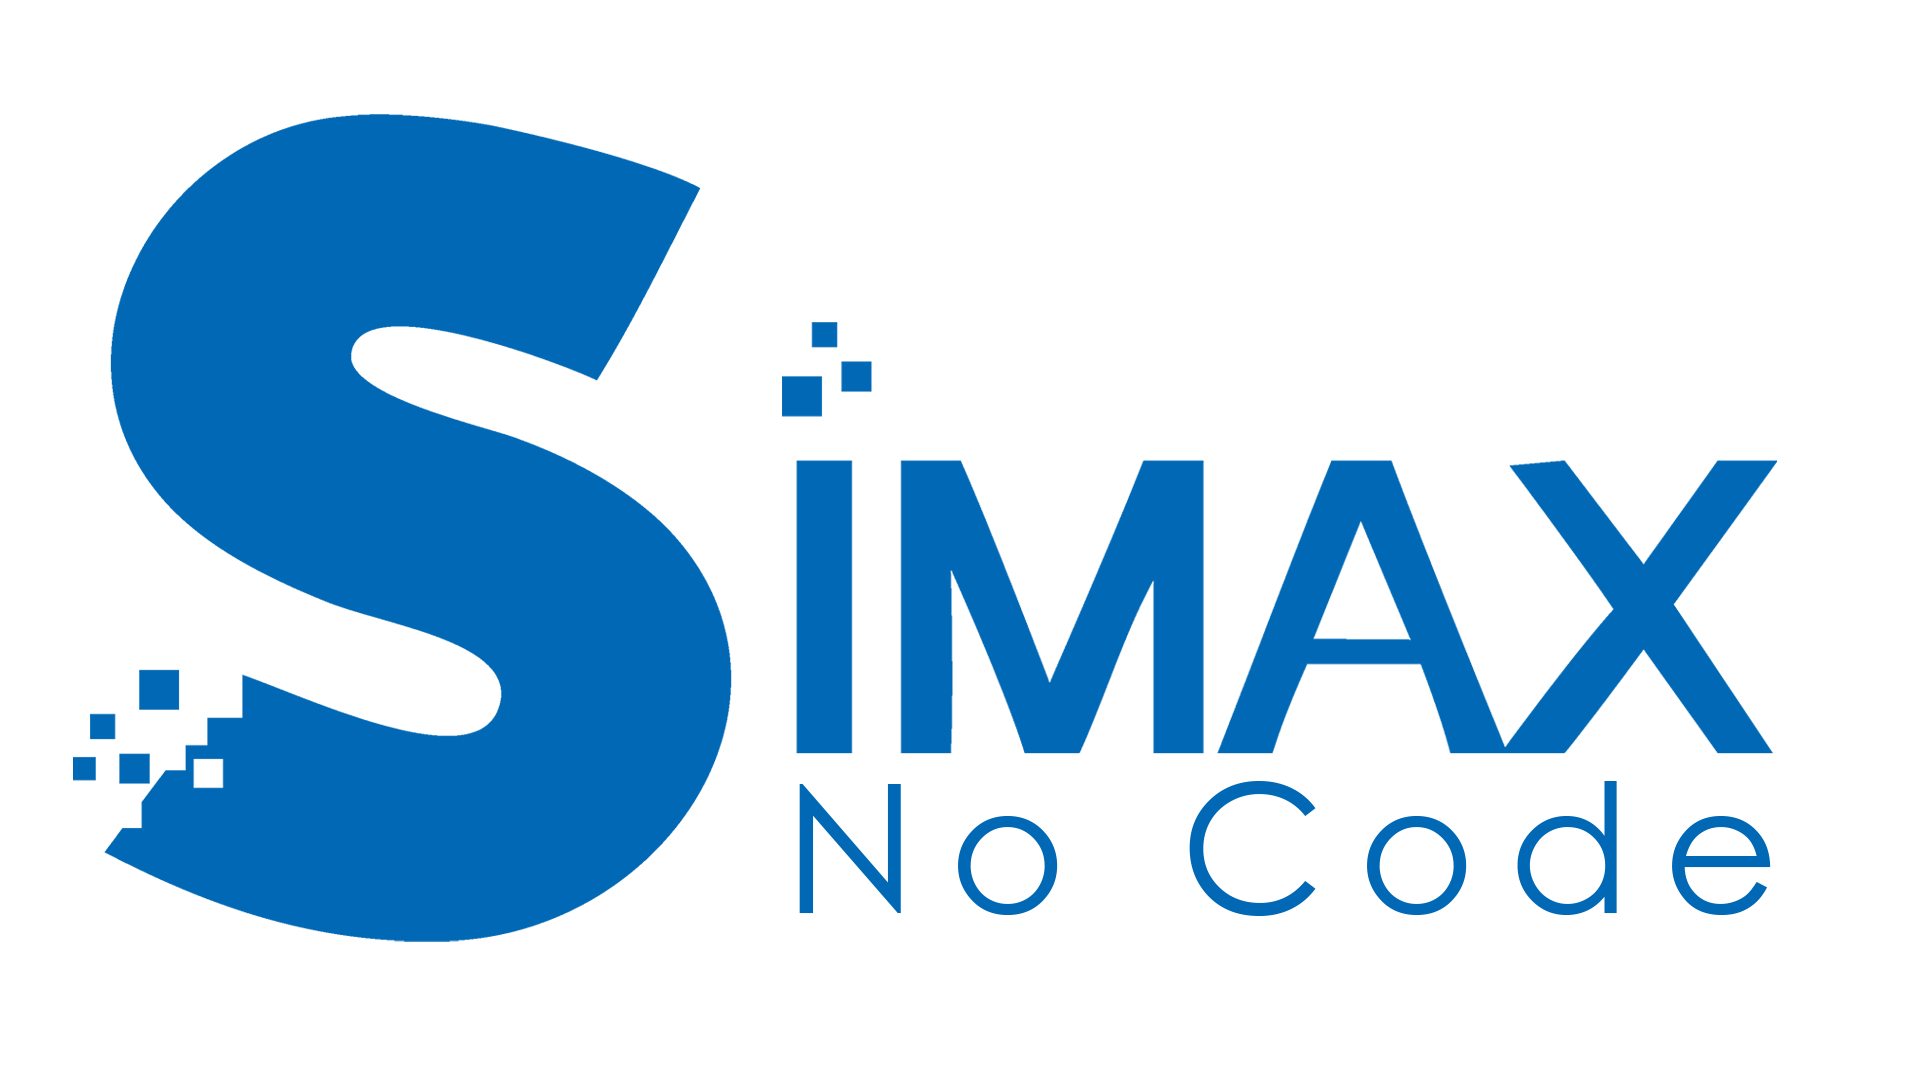 SIMAX-NoCode